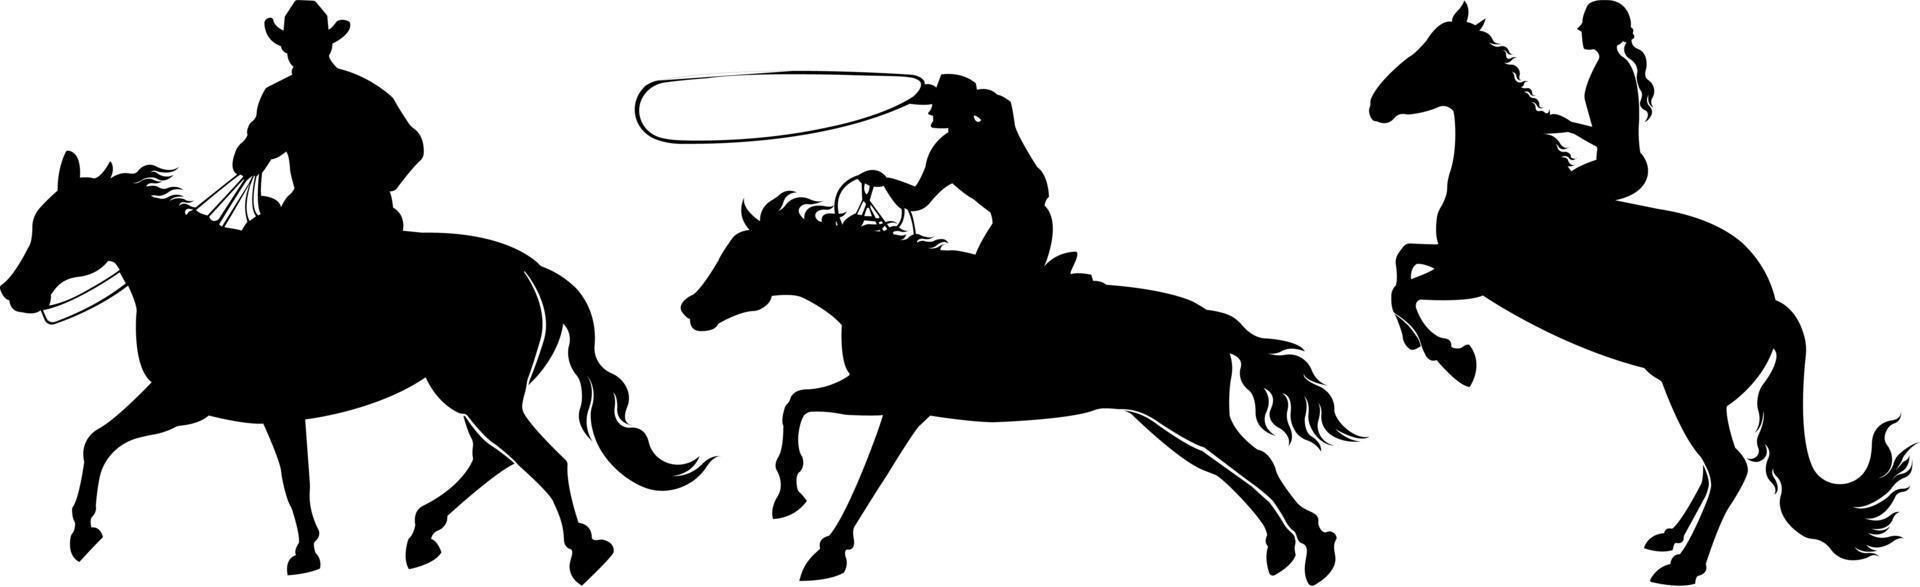 un ensemble de silhouettes vectorielles de chevaux et de personnes les montant, isolés sur fond blanc. vecteur